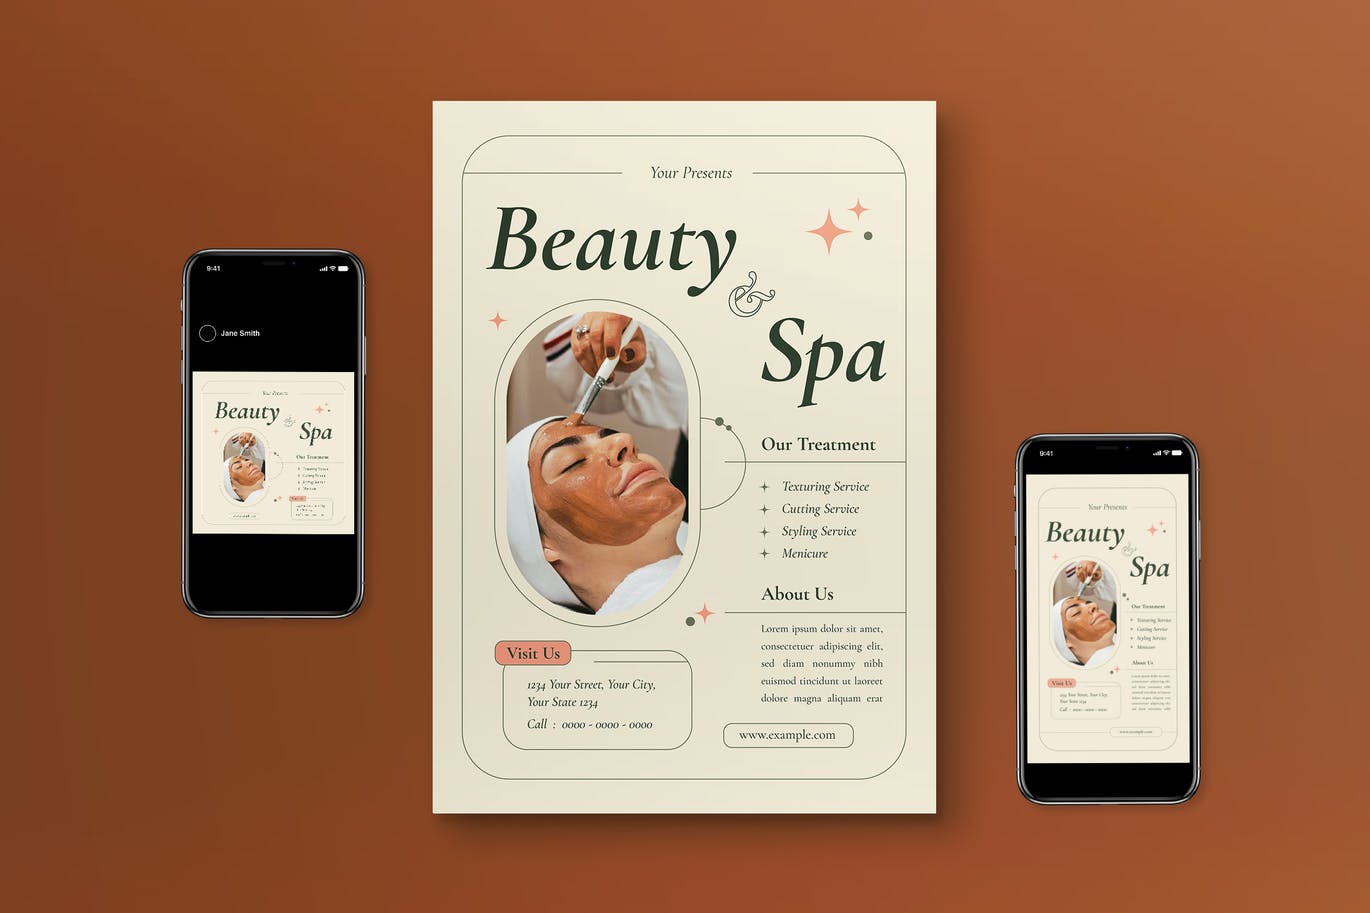 美容和水疗中心宣传单模板 Beauty and Spa Flyer Set 设计素材 第1张